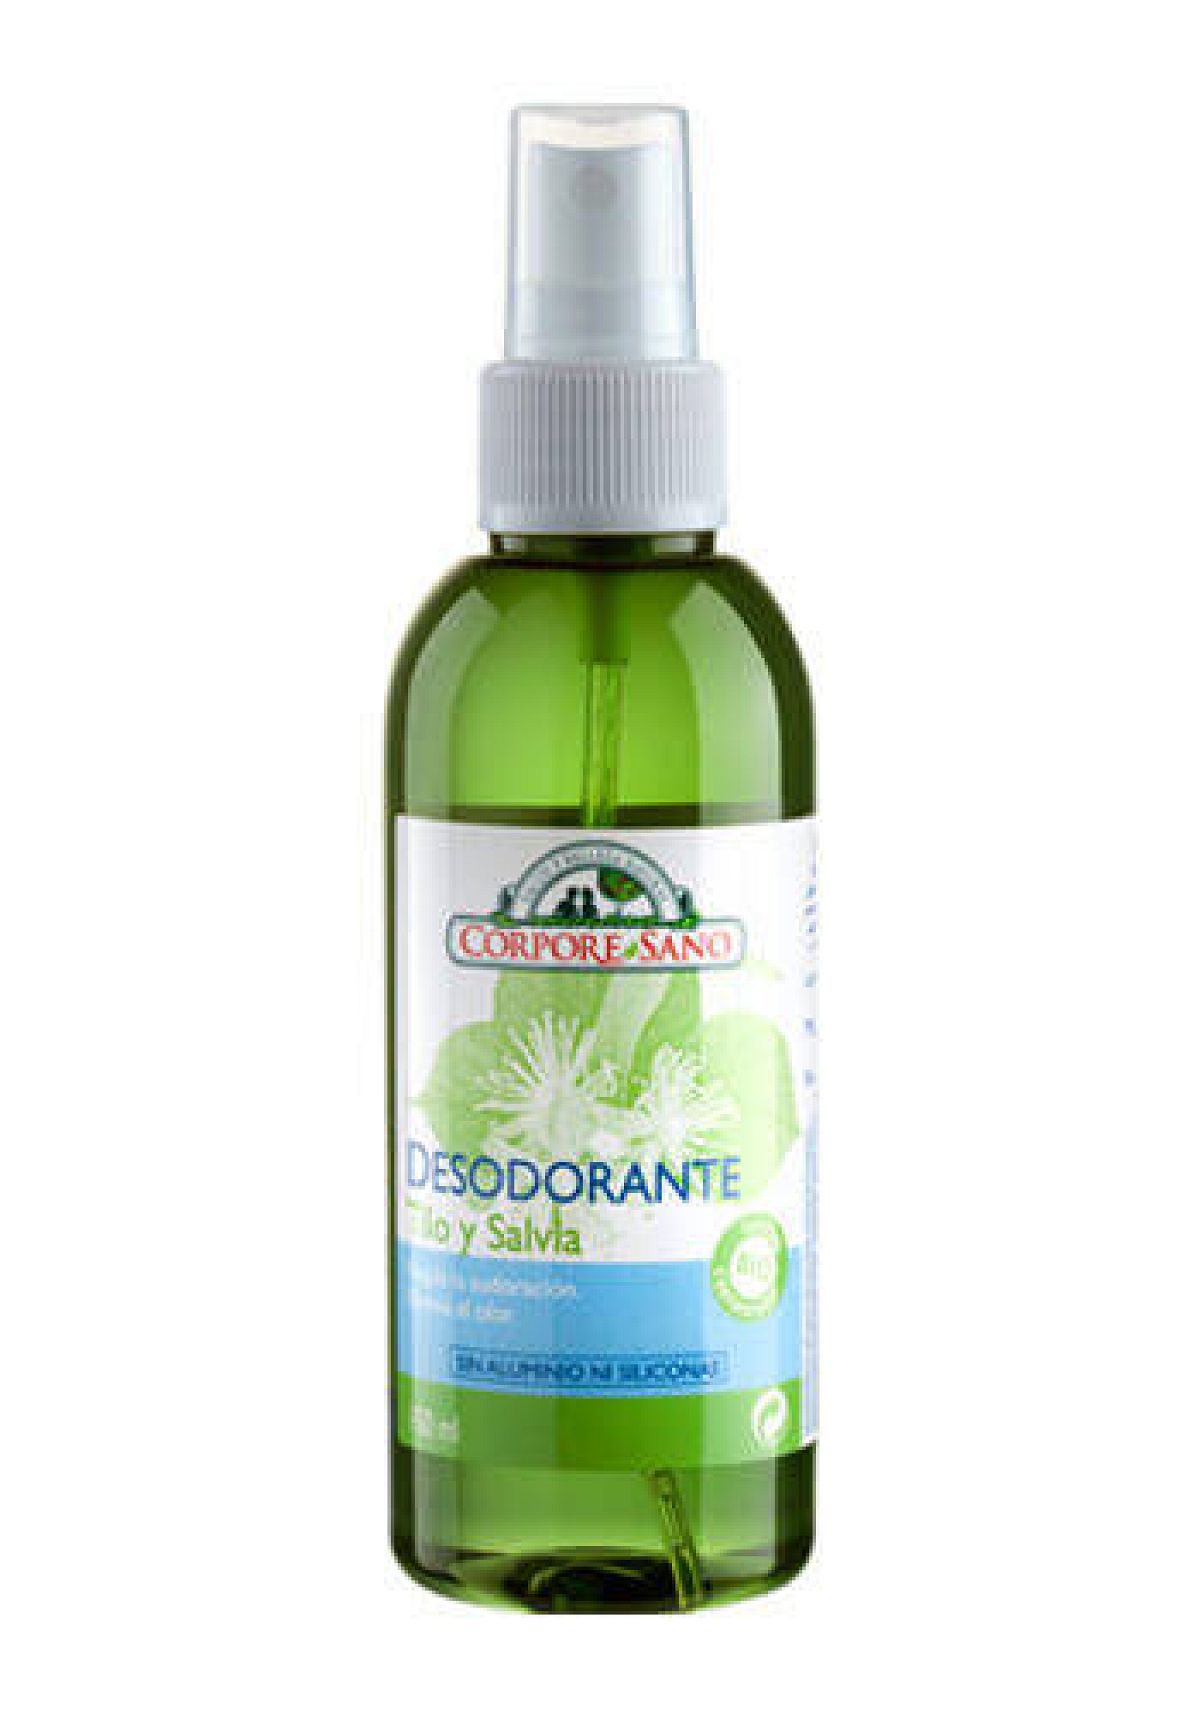 Corpore sano - Desodorante tilo y salvia 150ml